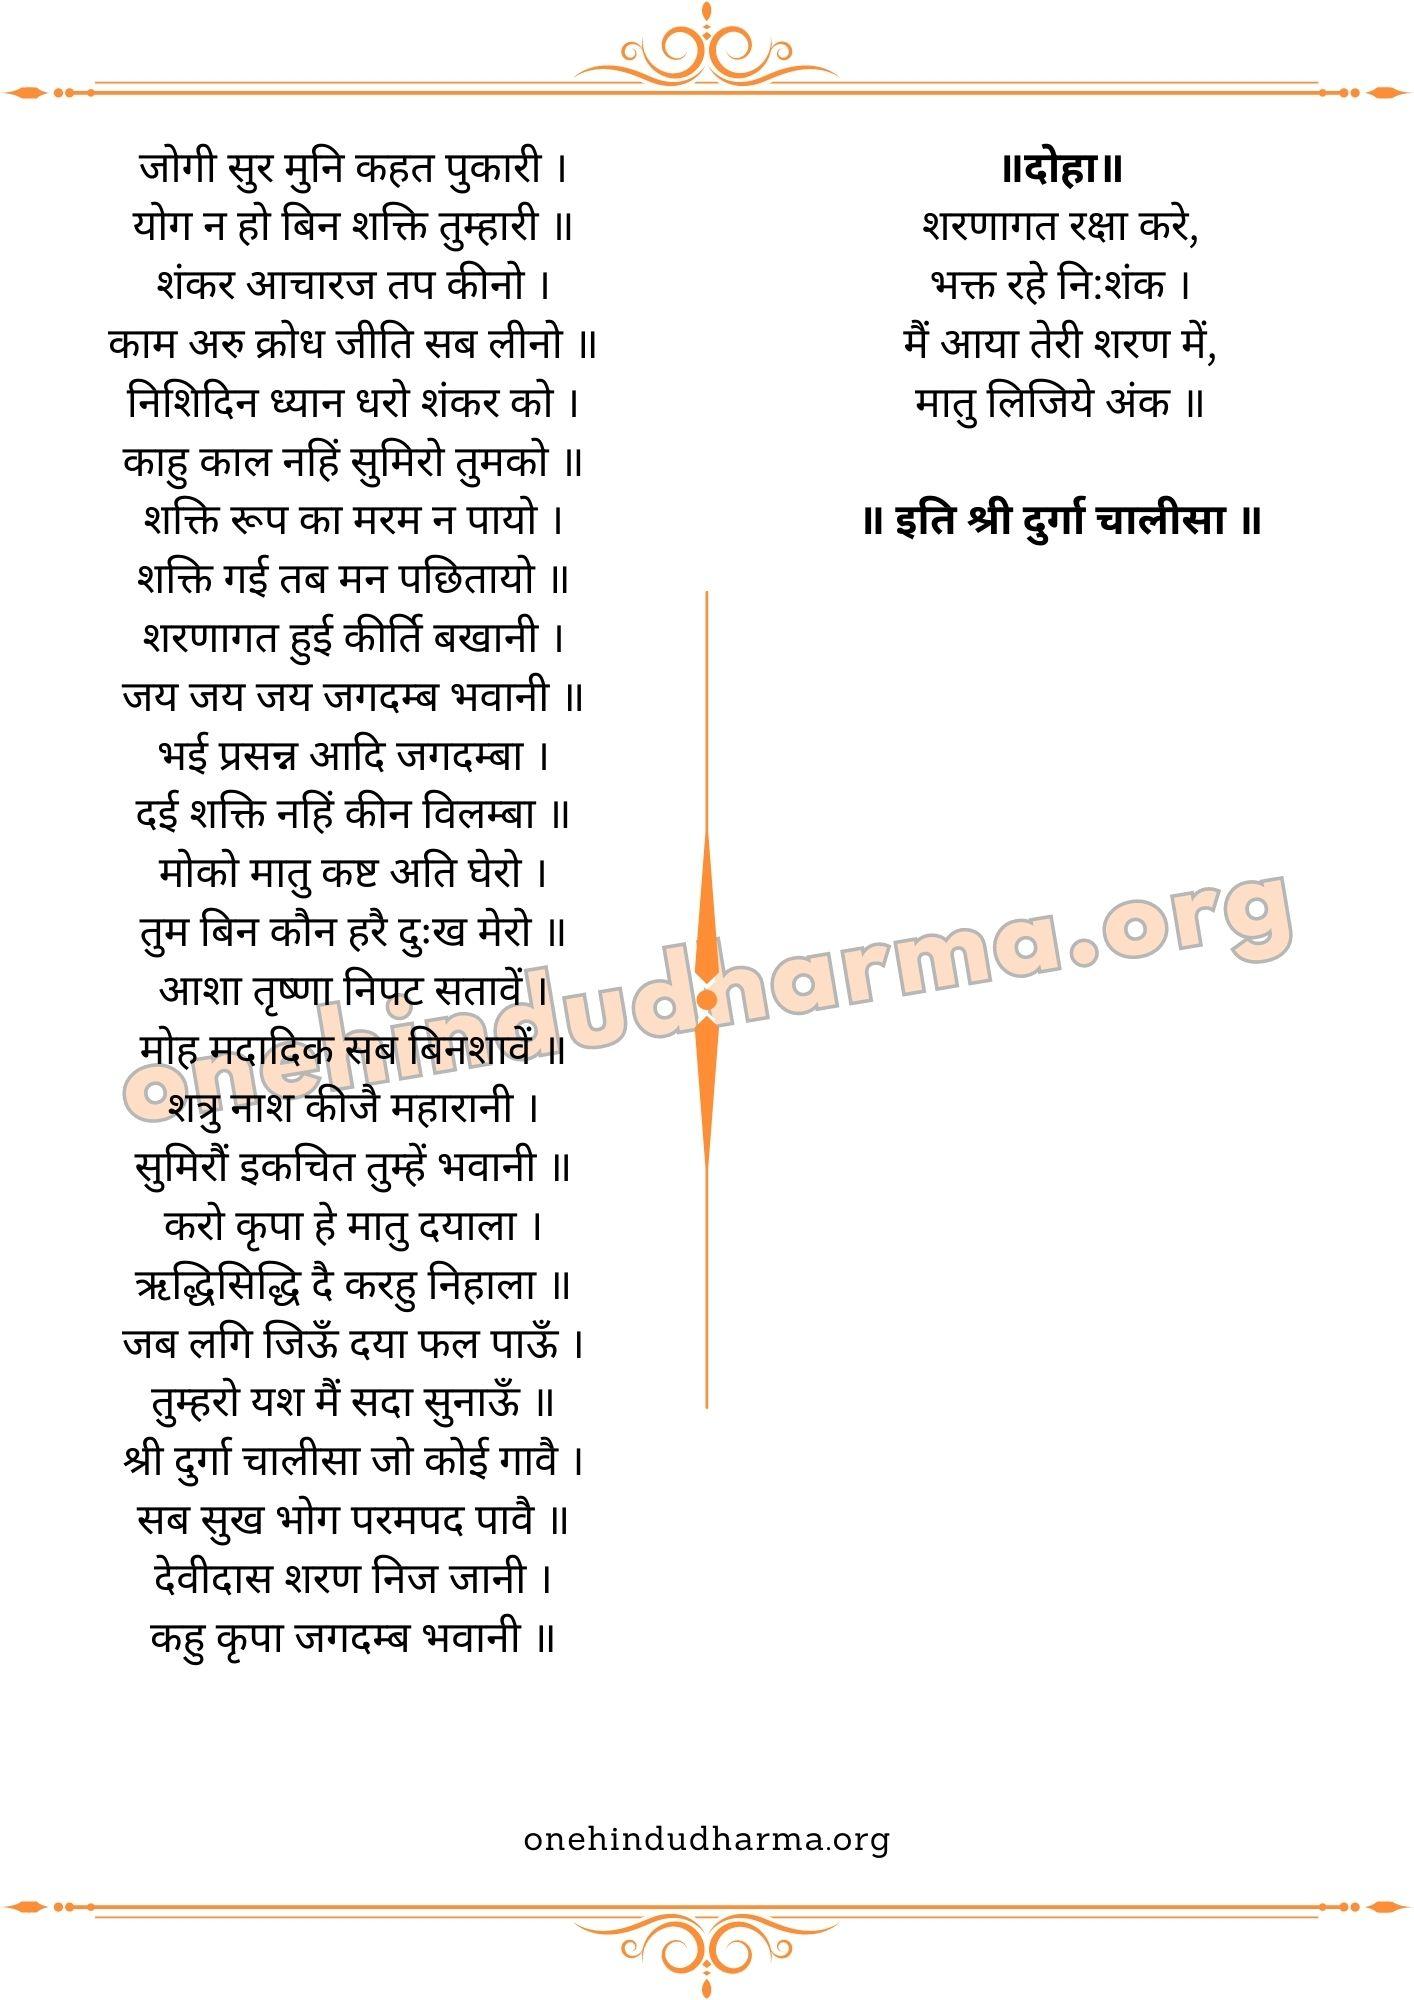 दुर्गा चालीसा (Durga Chalisa In Hindi Lyrics)